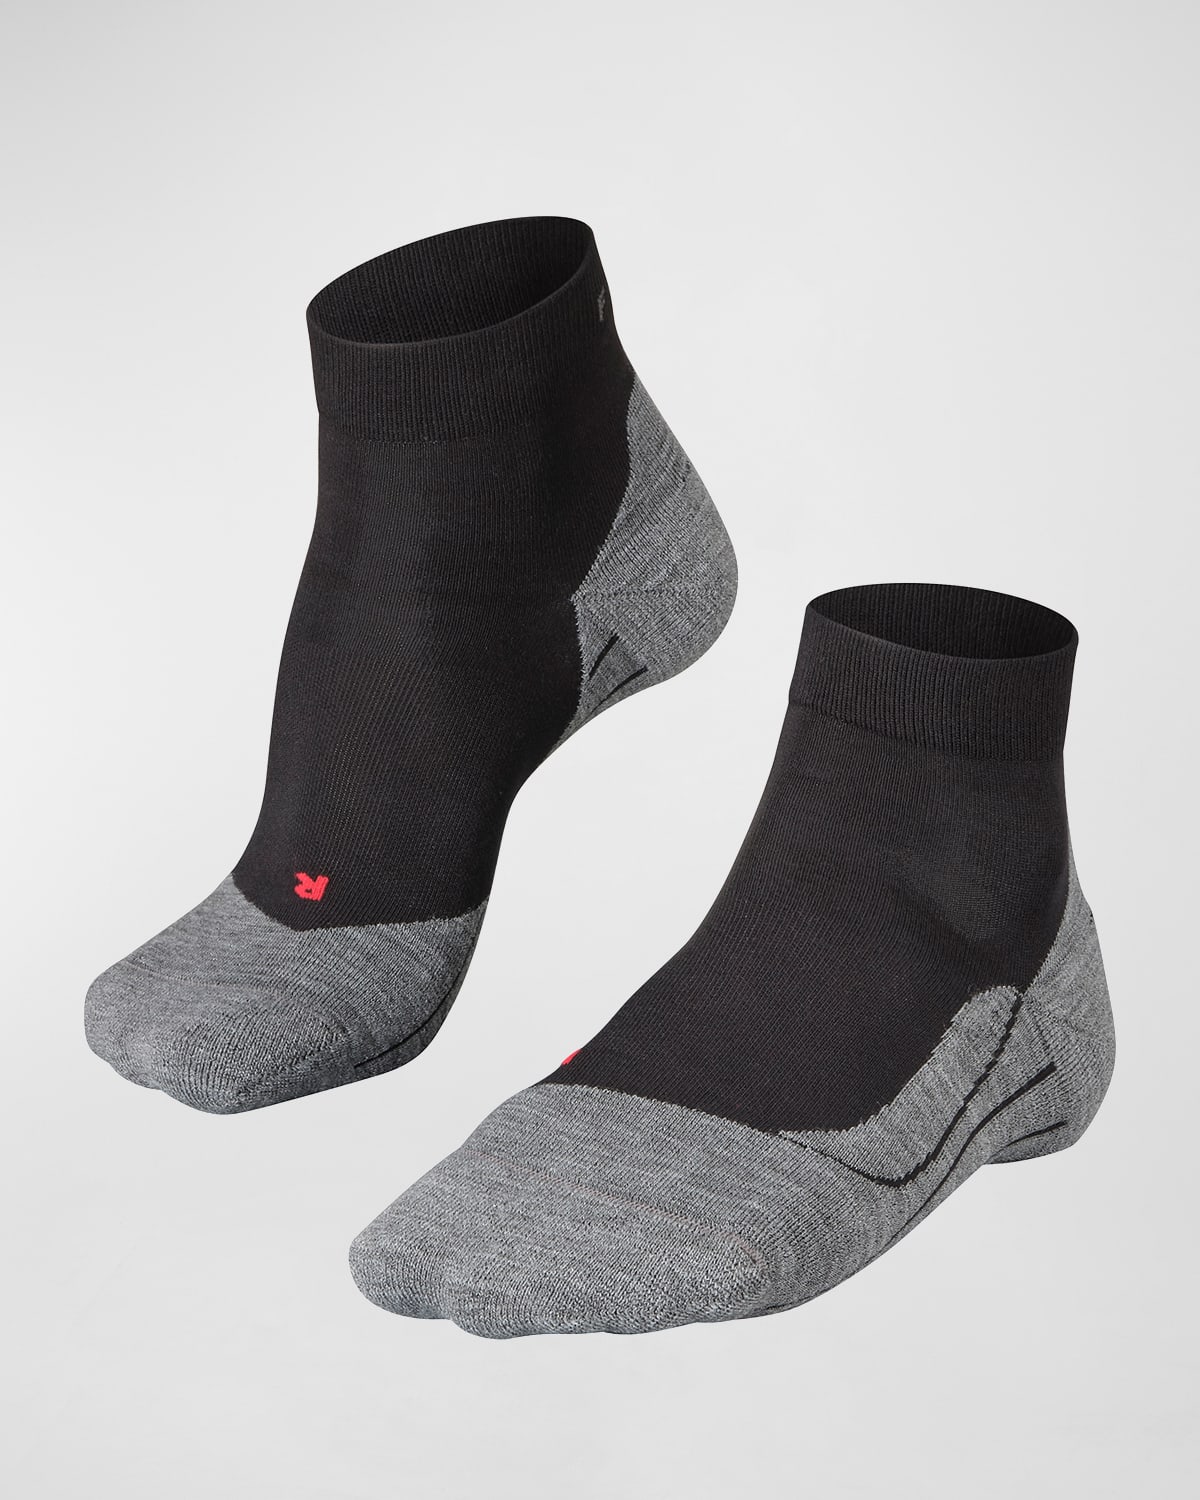 Falke Men's Ru4 High-ankle Running Socks In Black Mix